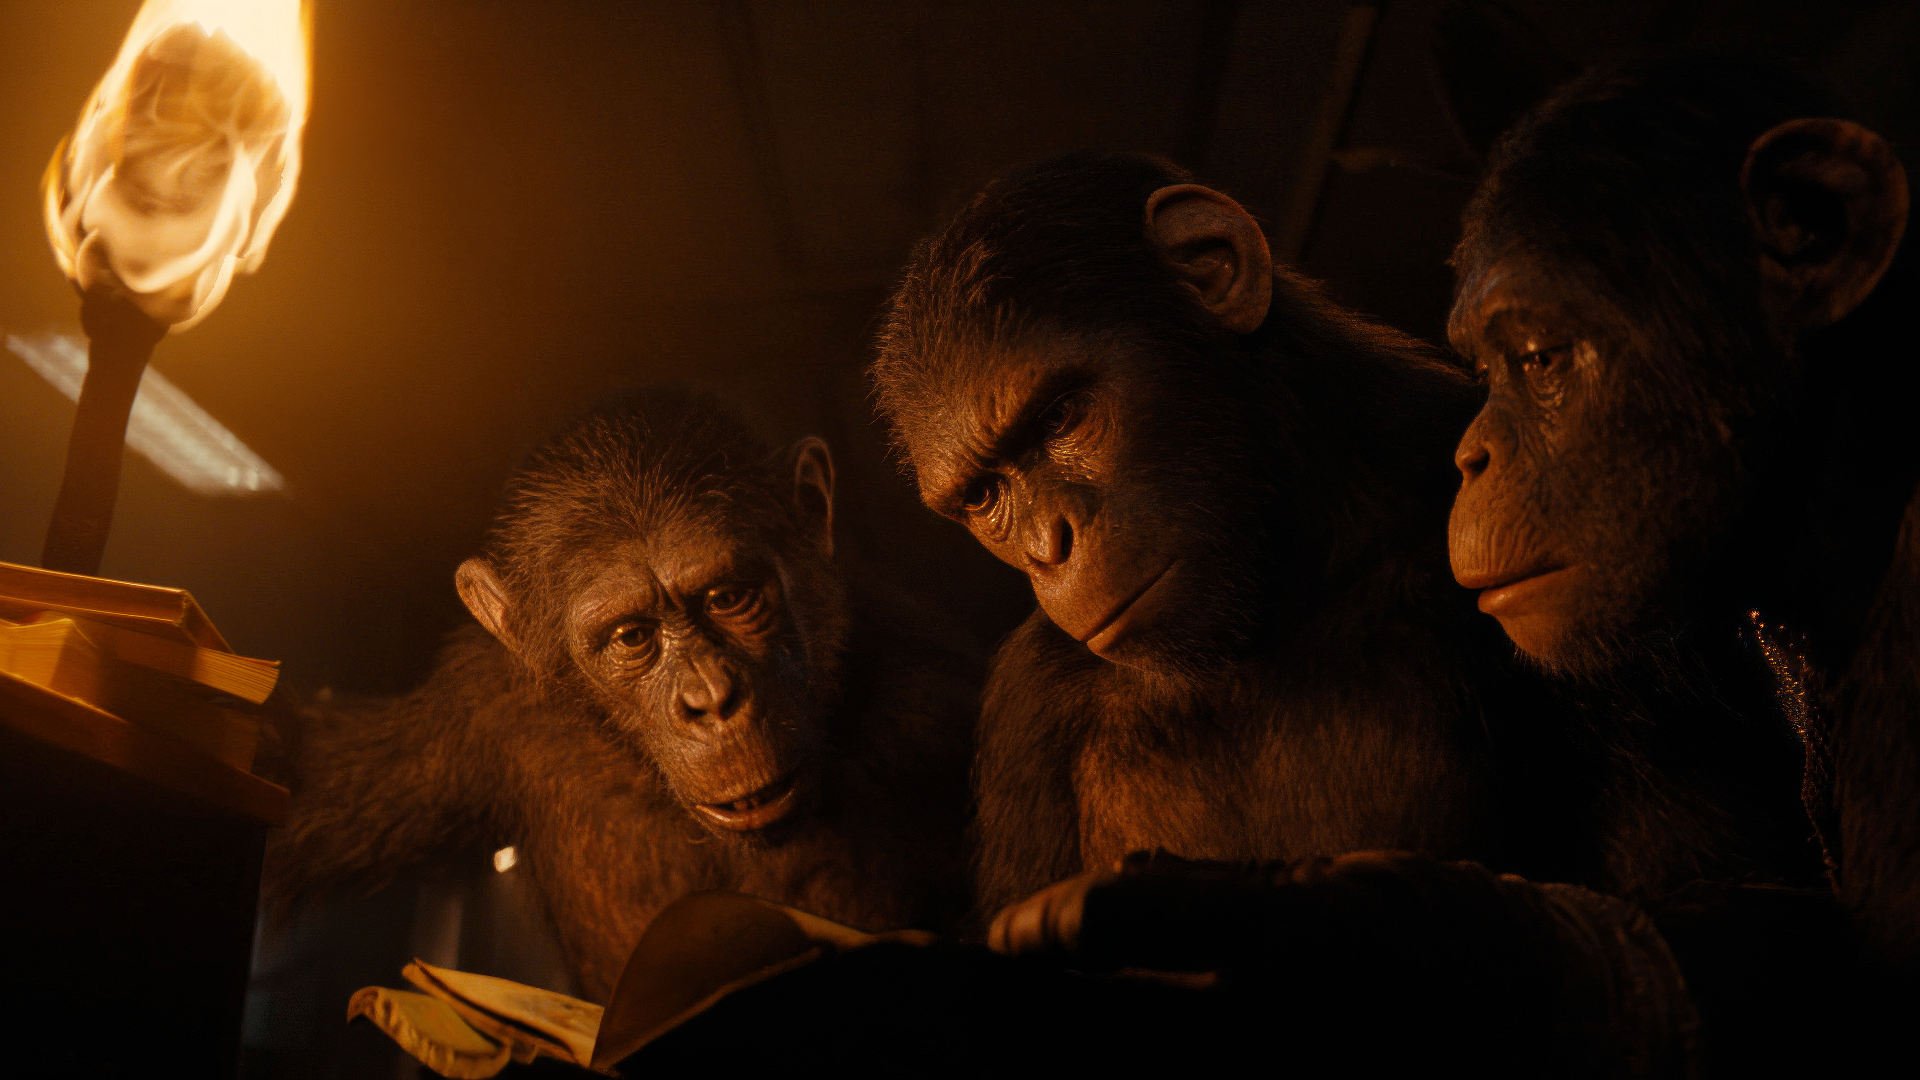 Oscar 2025: Il Regno del Pianeta delle Scimmie sarà candidato per gli effetti visivi?